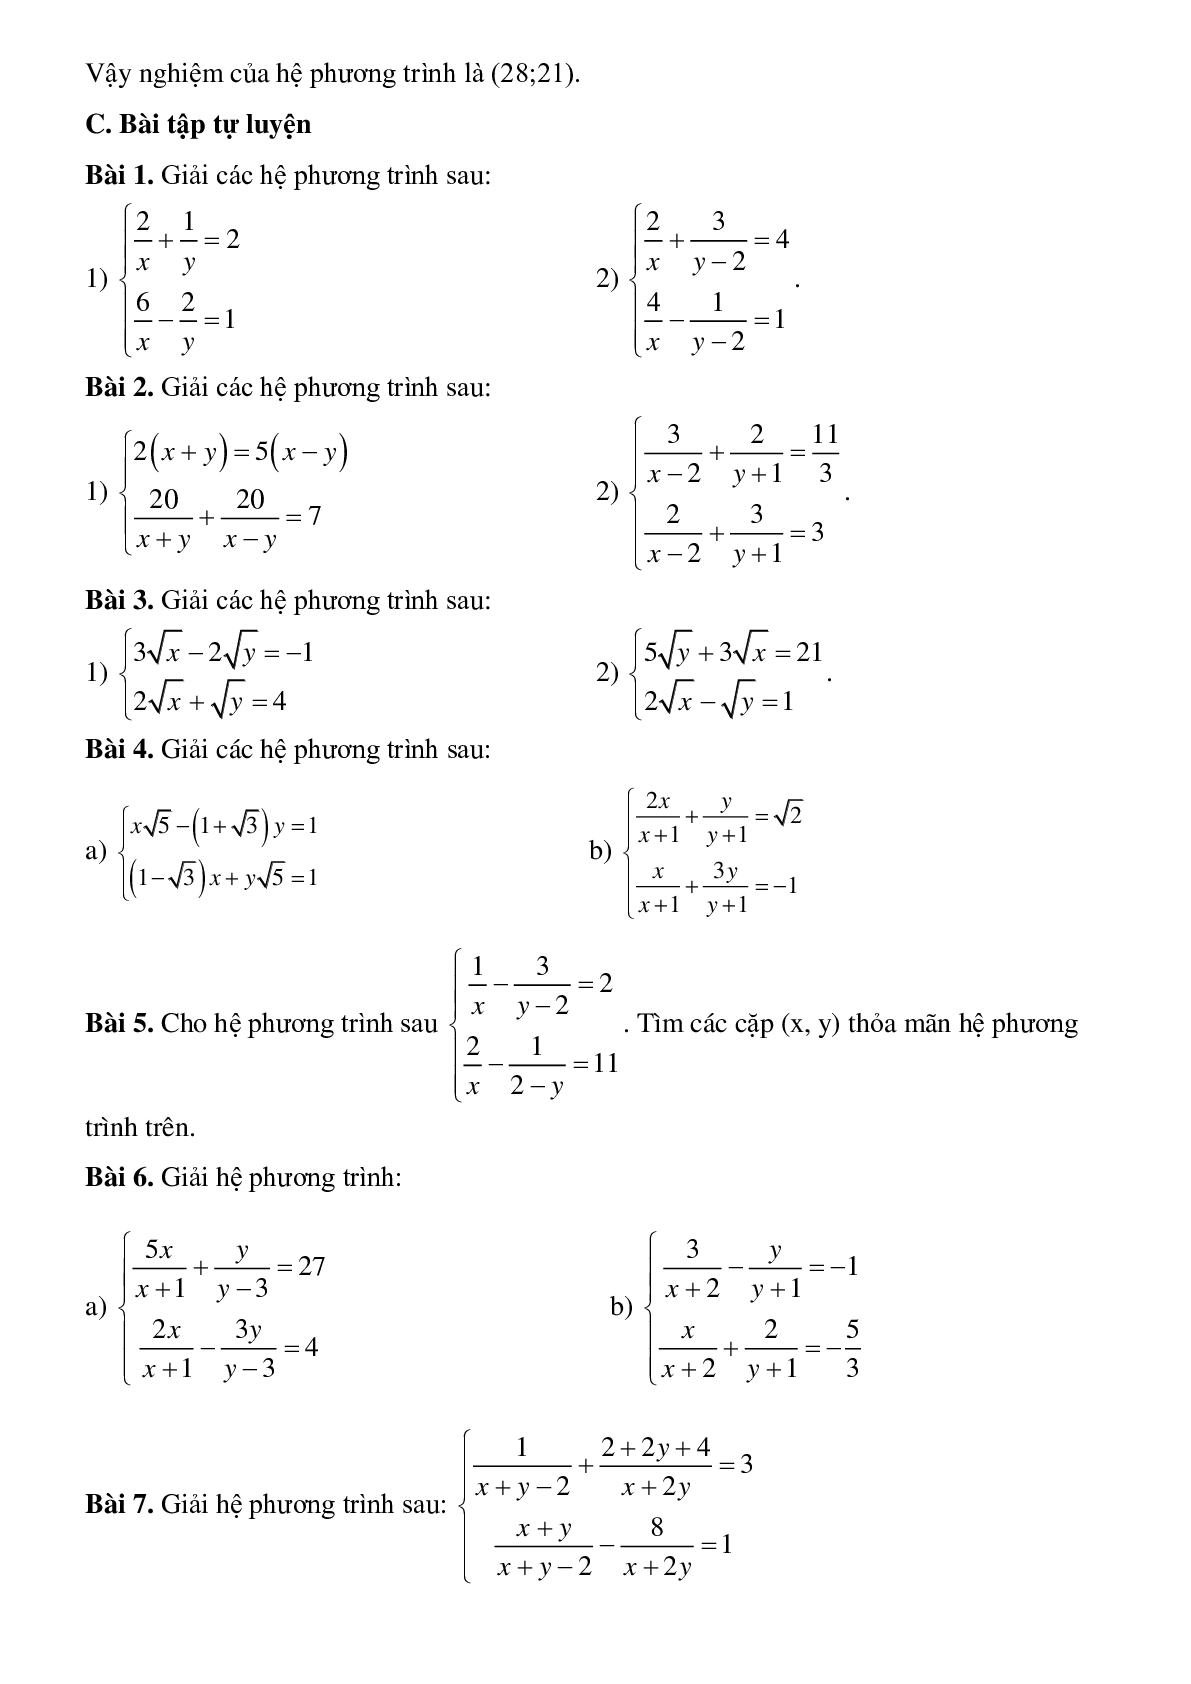 Bài tập về Giải hệ phương trình bằng phương pháp đặt ẩn phụ có lời giải (trang 3)